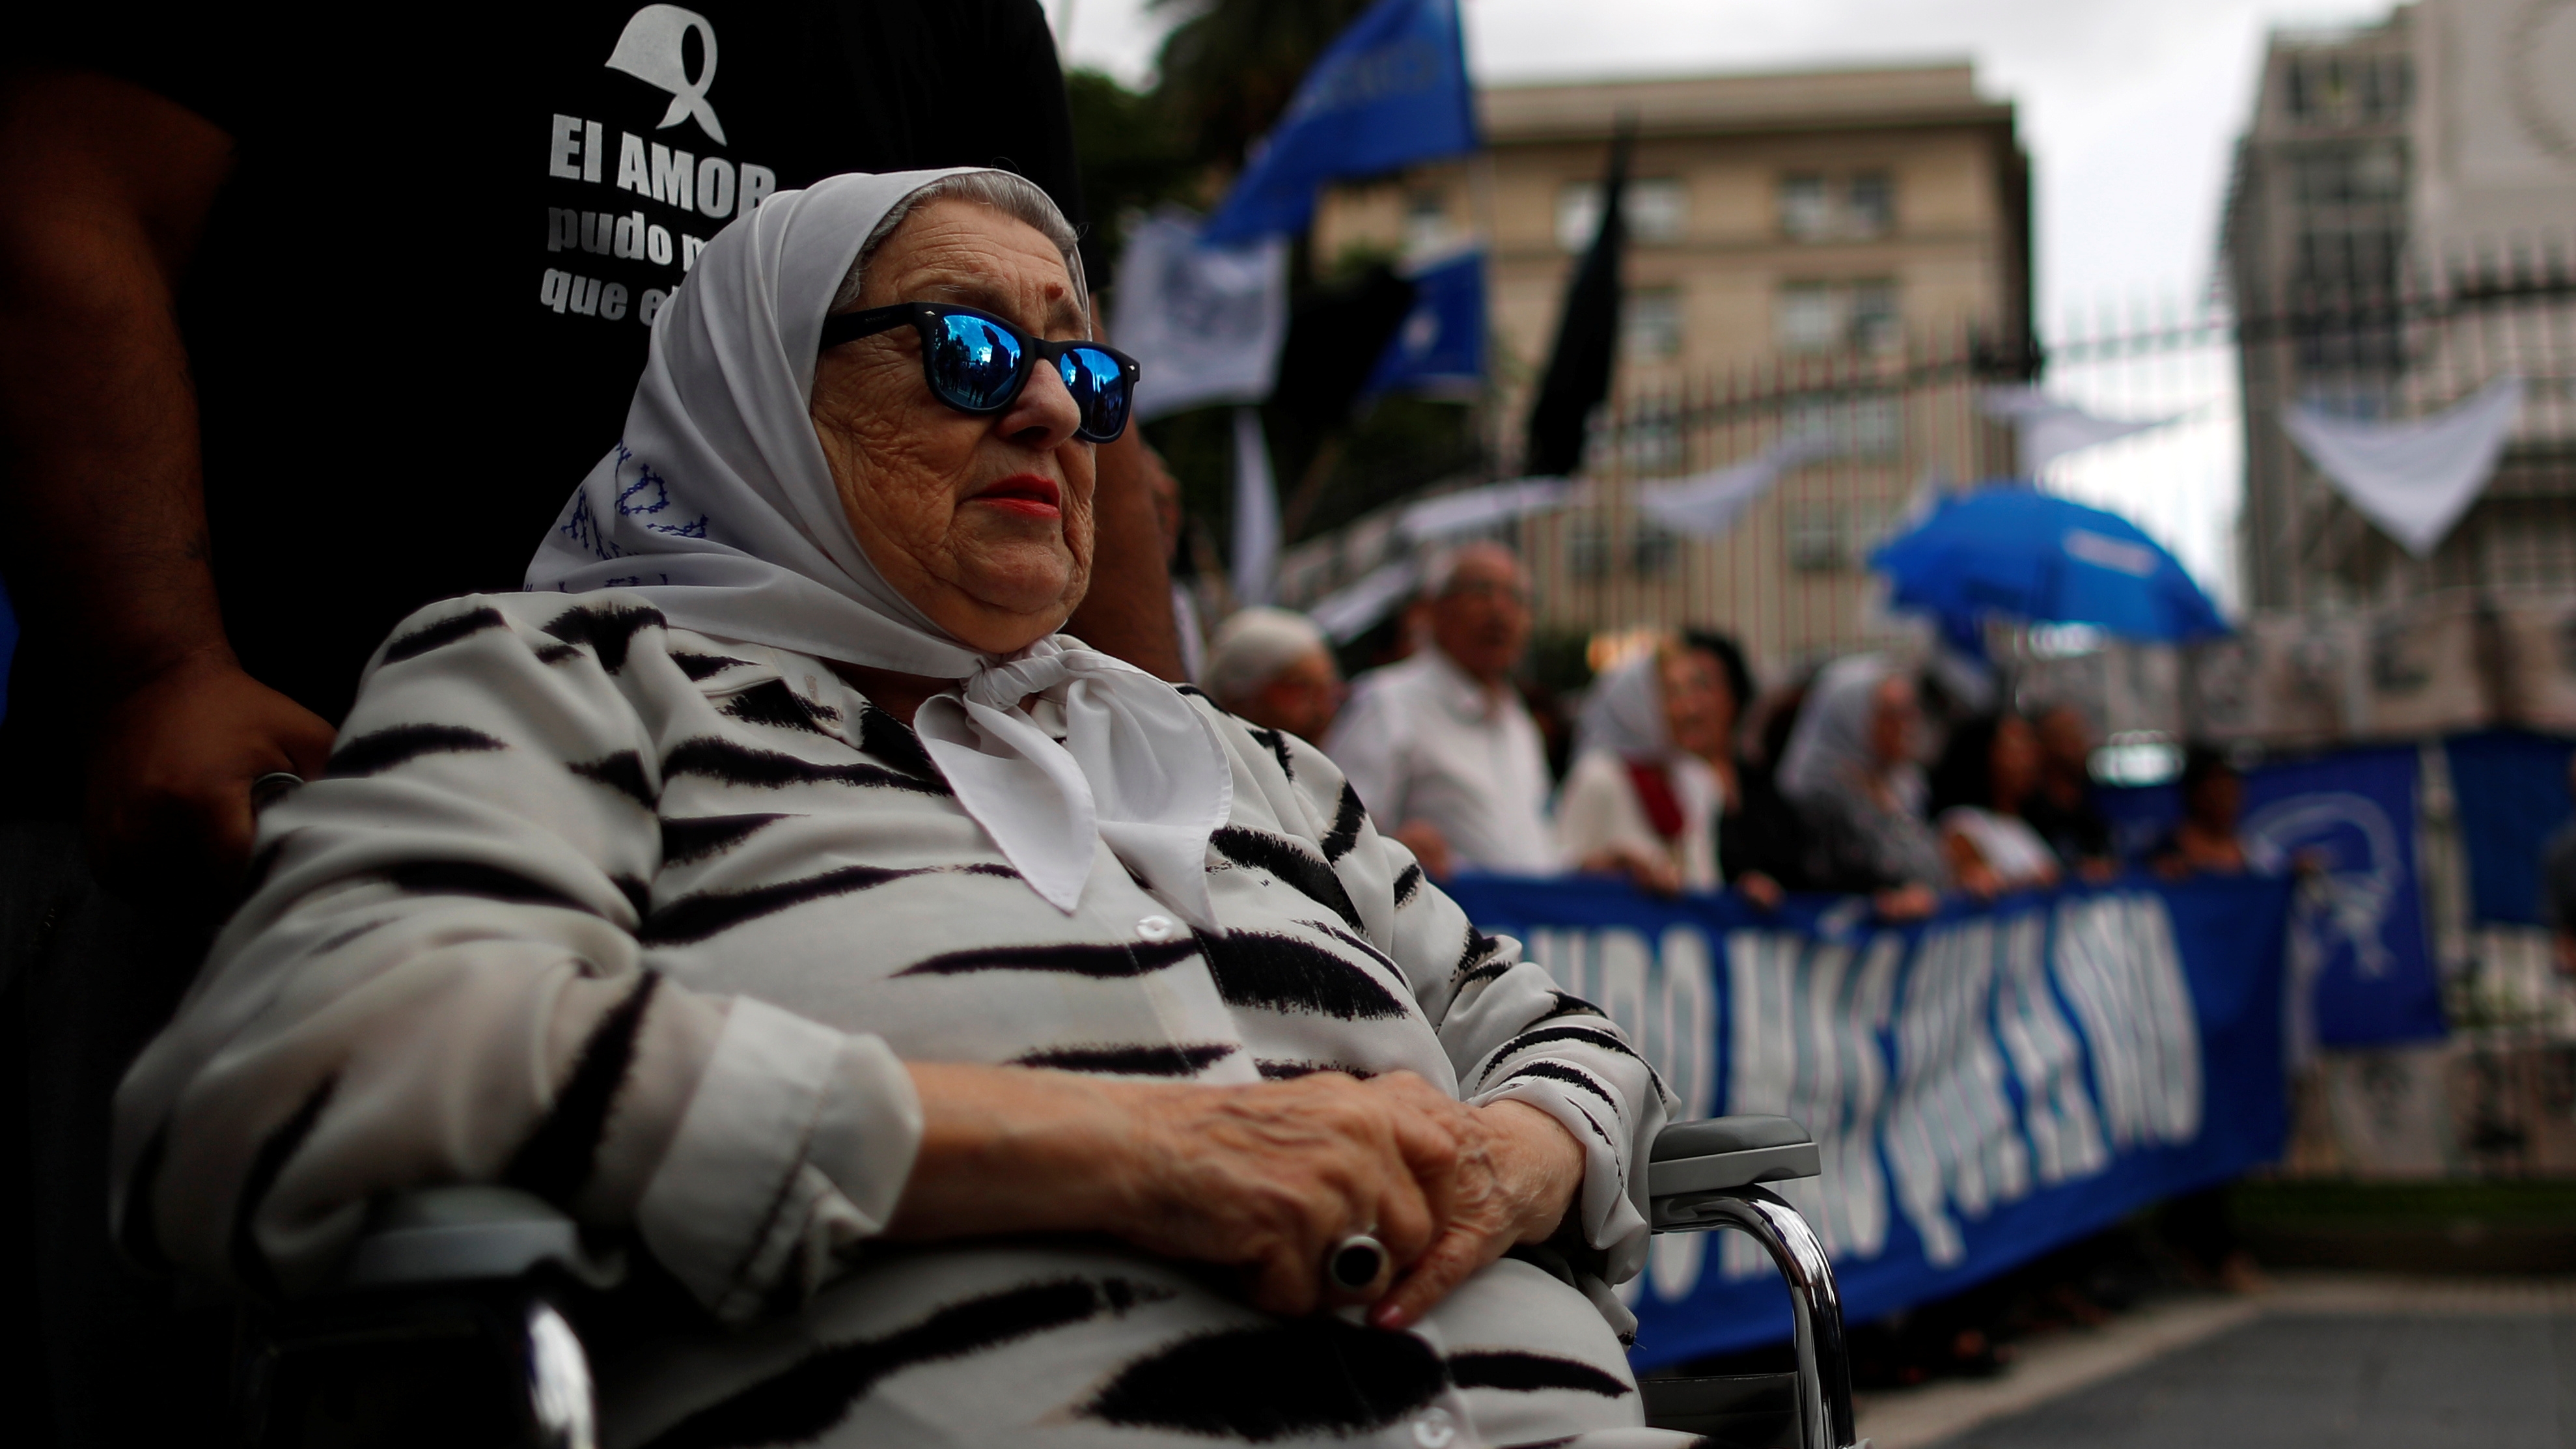 Hebe de Bonafini, fundadora del grupo de derechos humanos Madres de Plaza de Mayo marcha durante su última Marcha de Resistencia de 24 horas, en Plaza de Mayo, en Buenos Aires, Argentina, 29 de noviembre de 2019 (REUTERS/Agustin Marcarian)